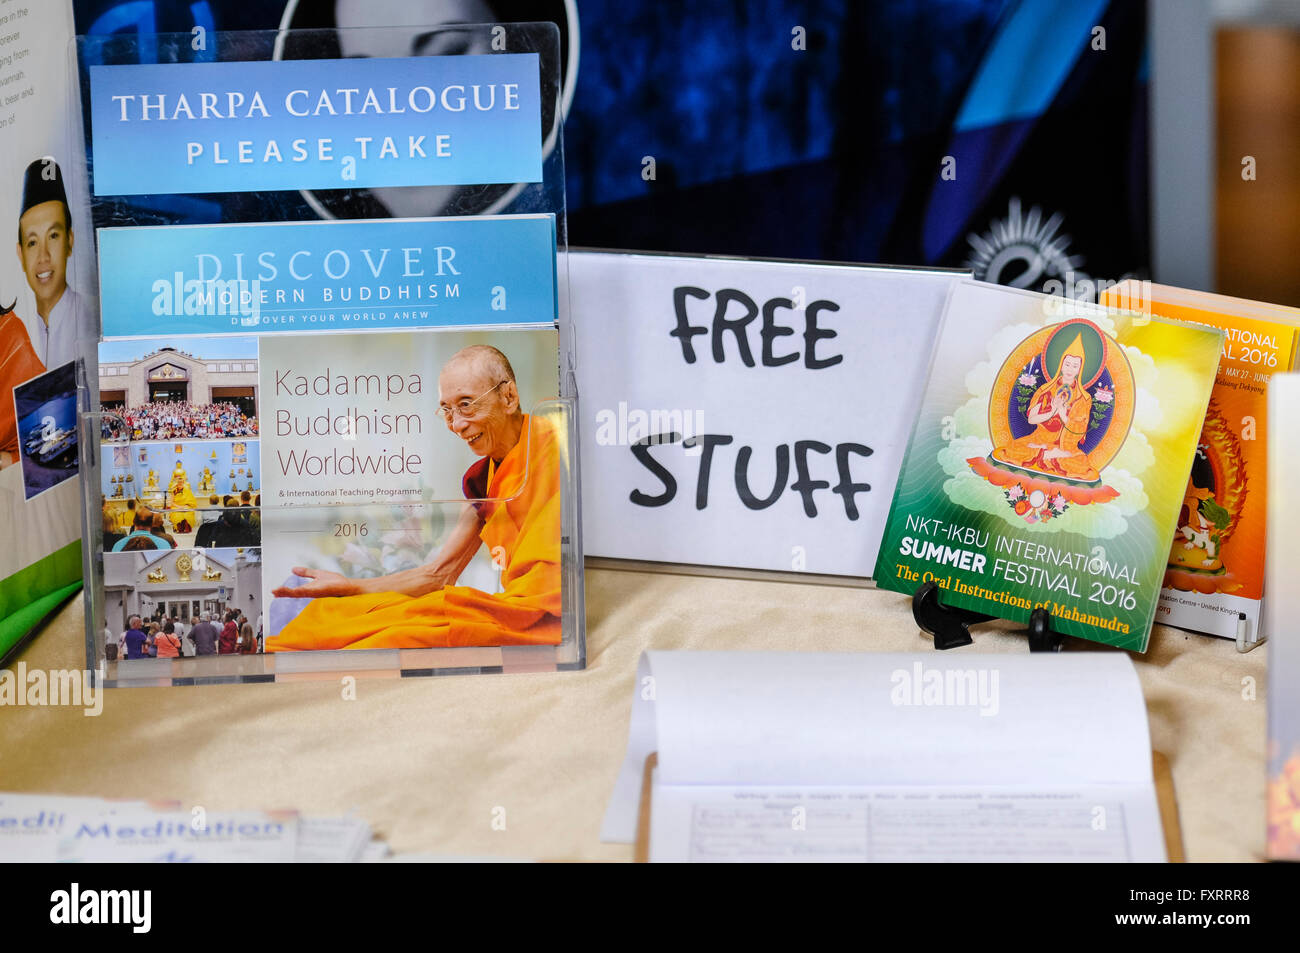 Libri buddista e gli articoli in vendita su un mercato in stallo con un cartello che diceva "Free Stuff" Foto Stock